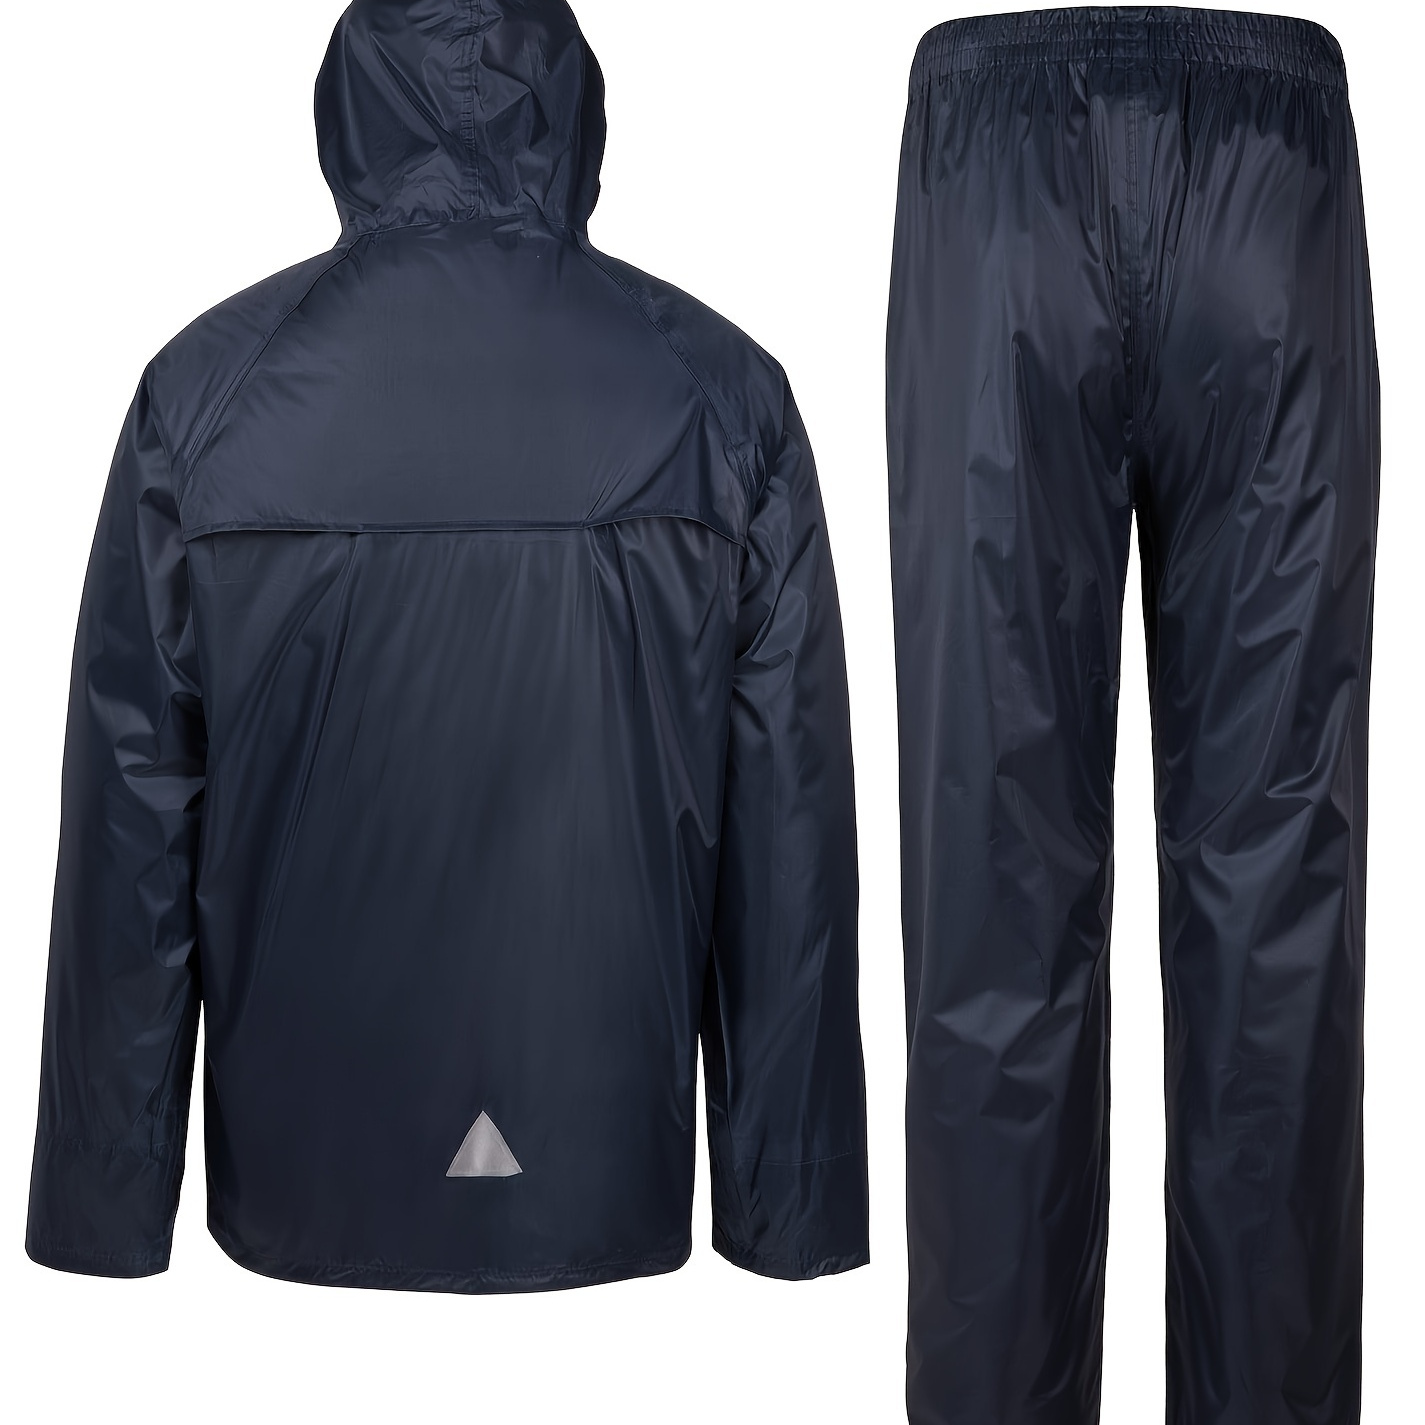 2pcs Men's Rain Suit Waterproof Lightweight Hooded Rainwear For Golf ...